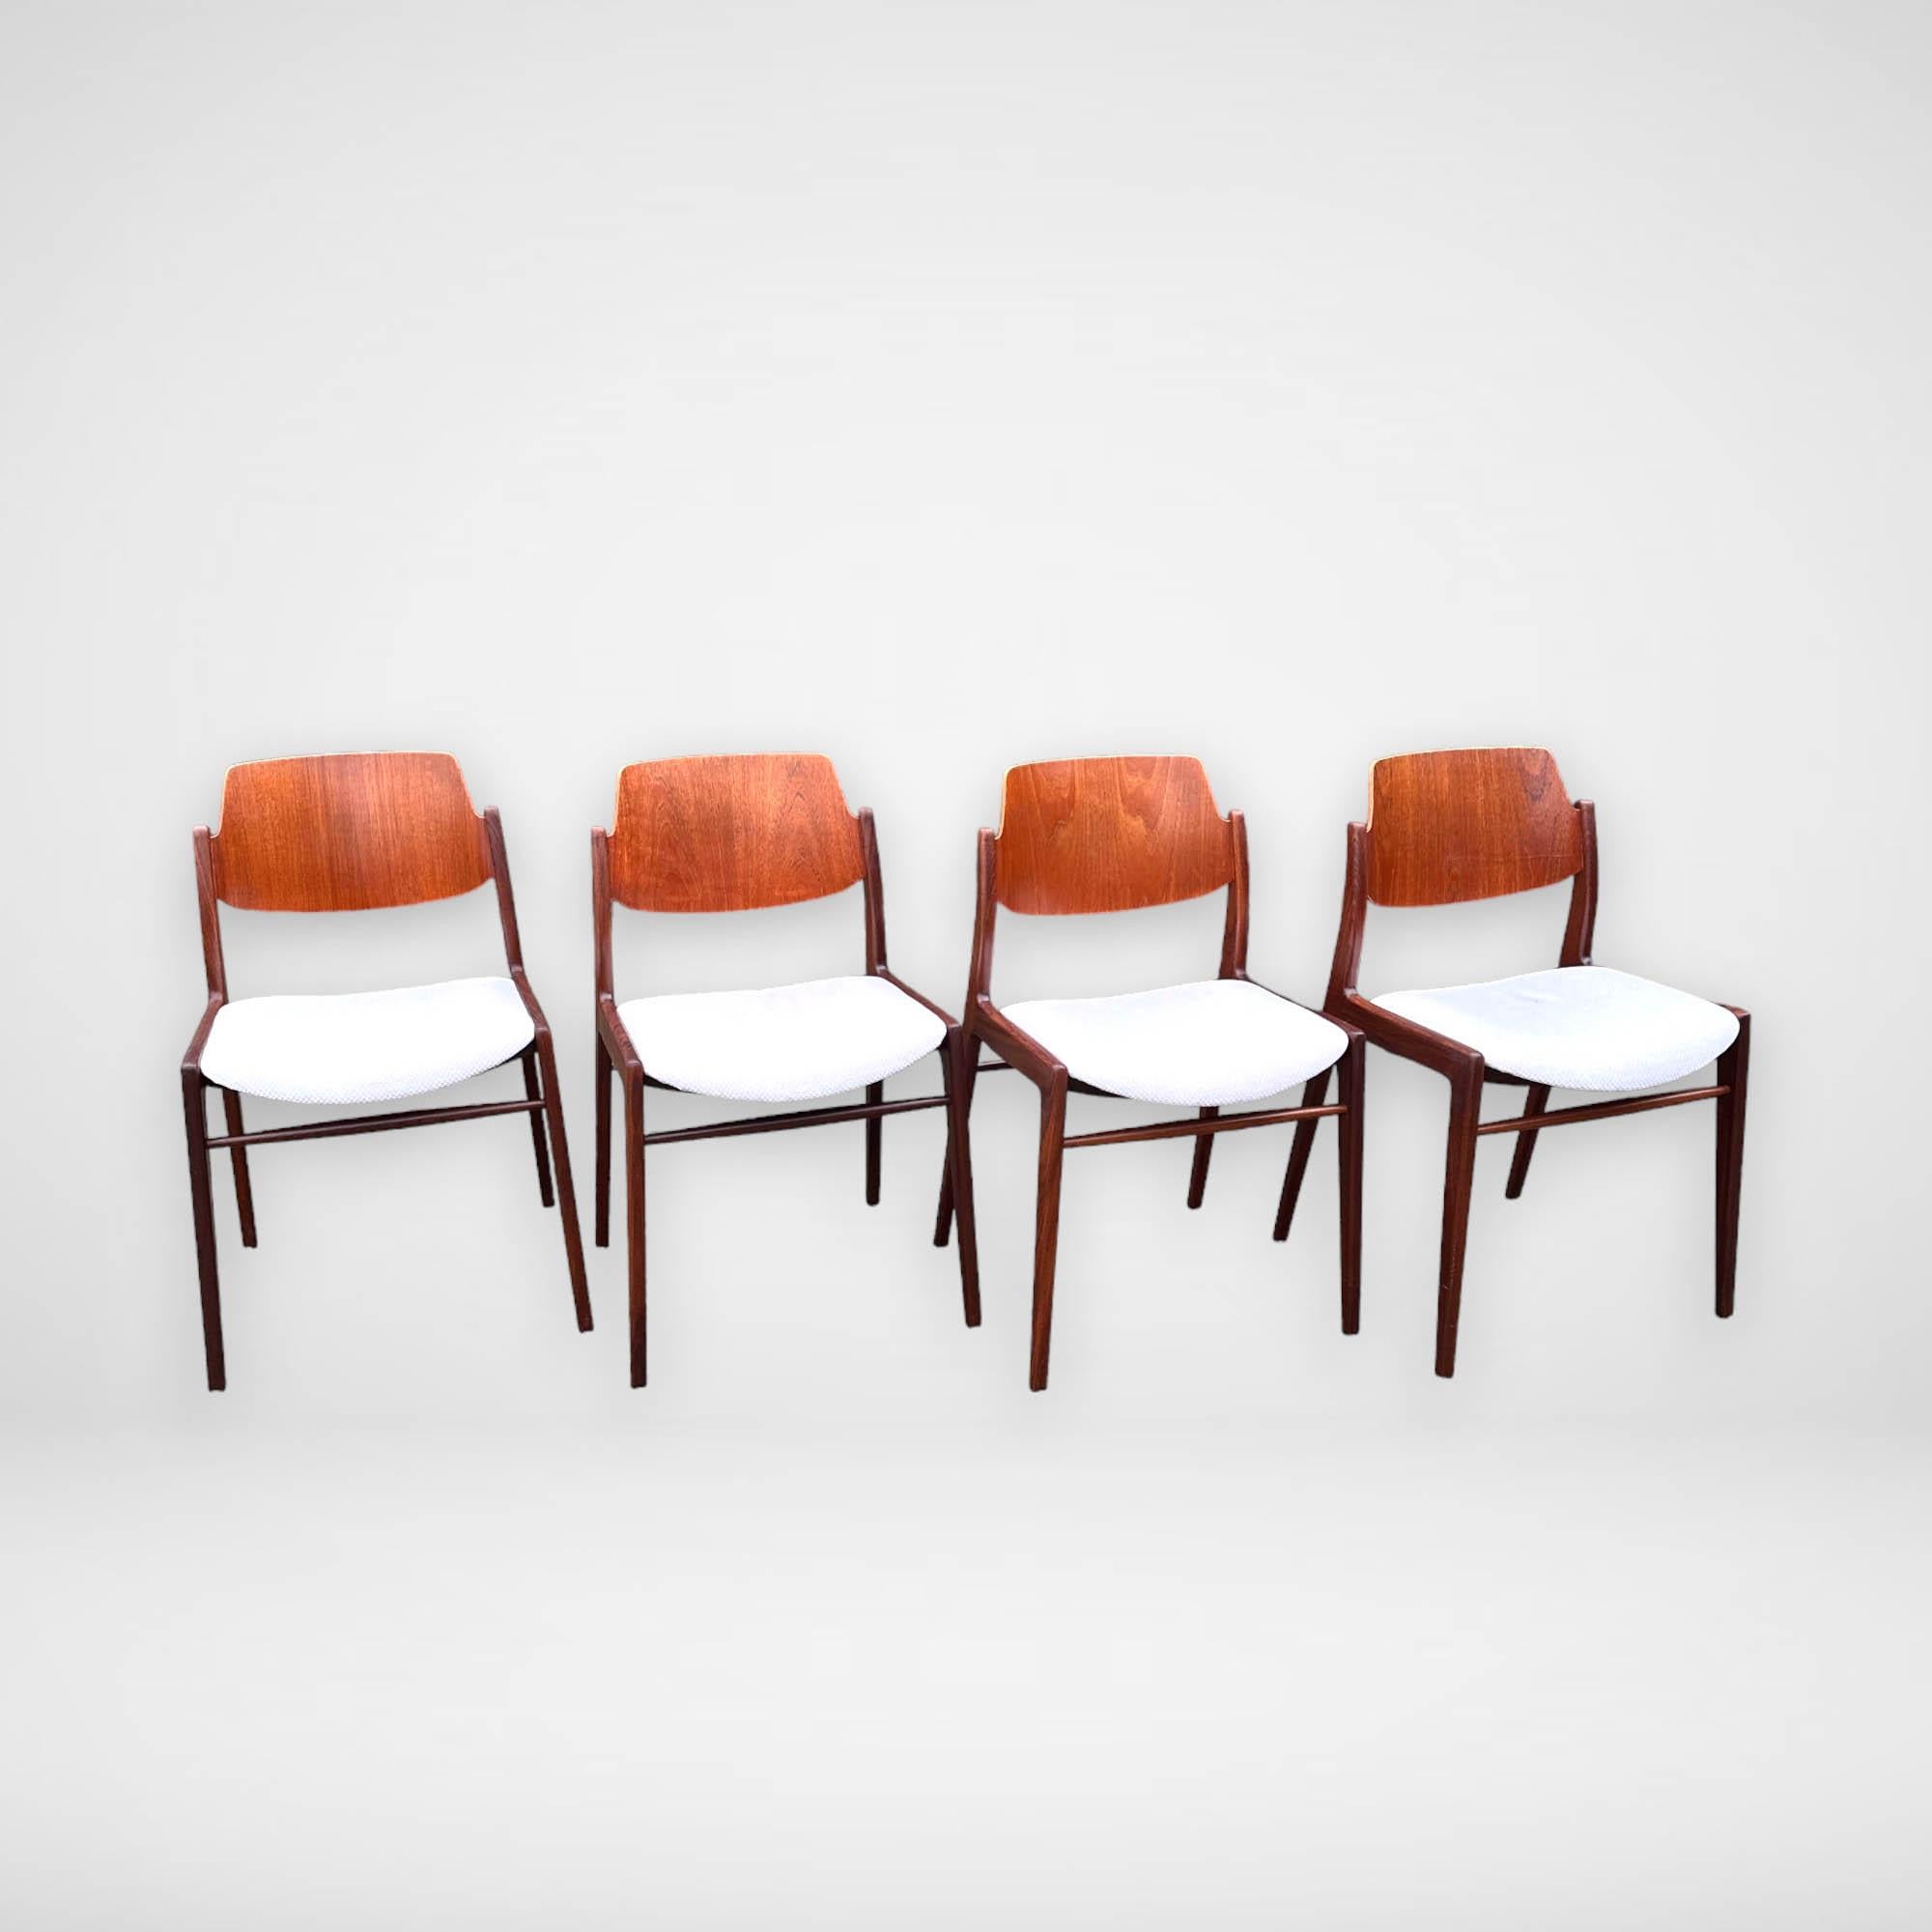 Un ensemble de 4 magnifiques chaises de salle à manger conçues par Hartmut Lohmeyer pour Wilkhahn. Le dossier est en contreplaqué de teck. Le cadre solide est en teck foncé. Ces chaises 'Model 476A' ont un design intemporel qui s'adapte aussi bien